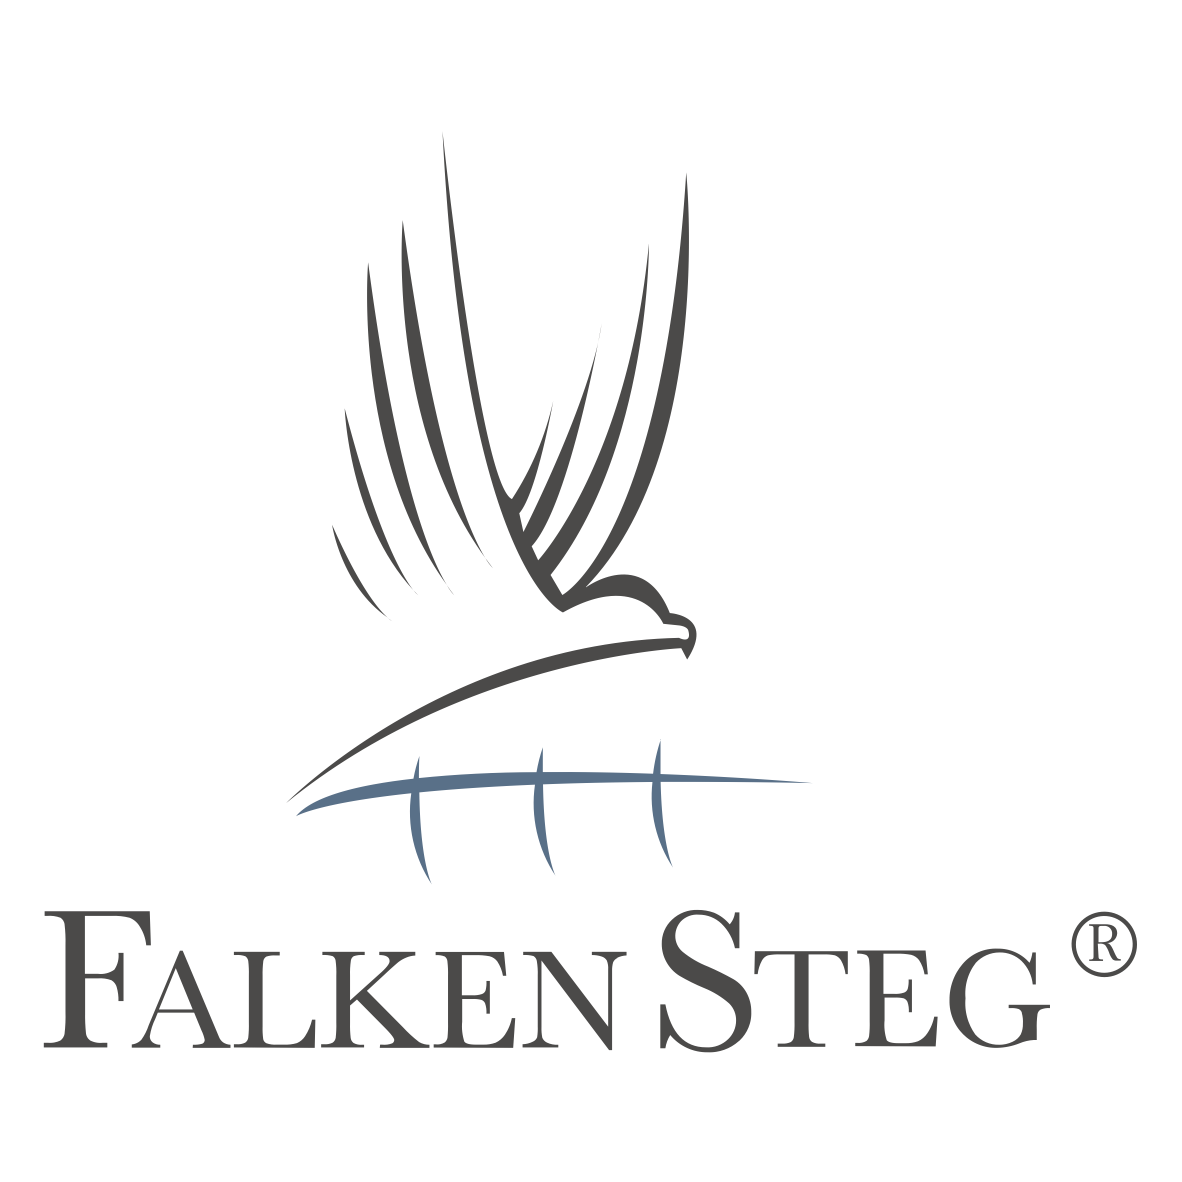 Falkensteg logo